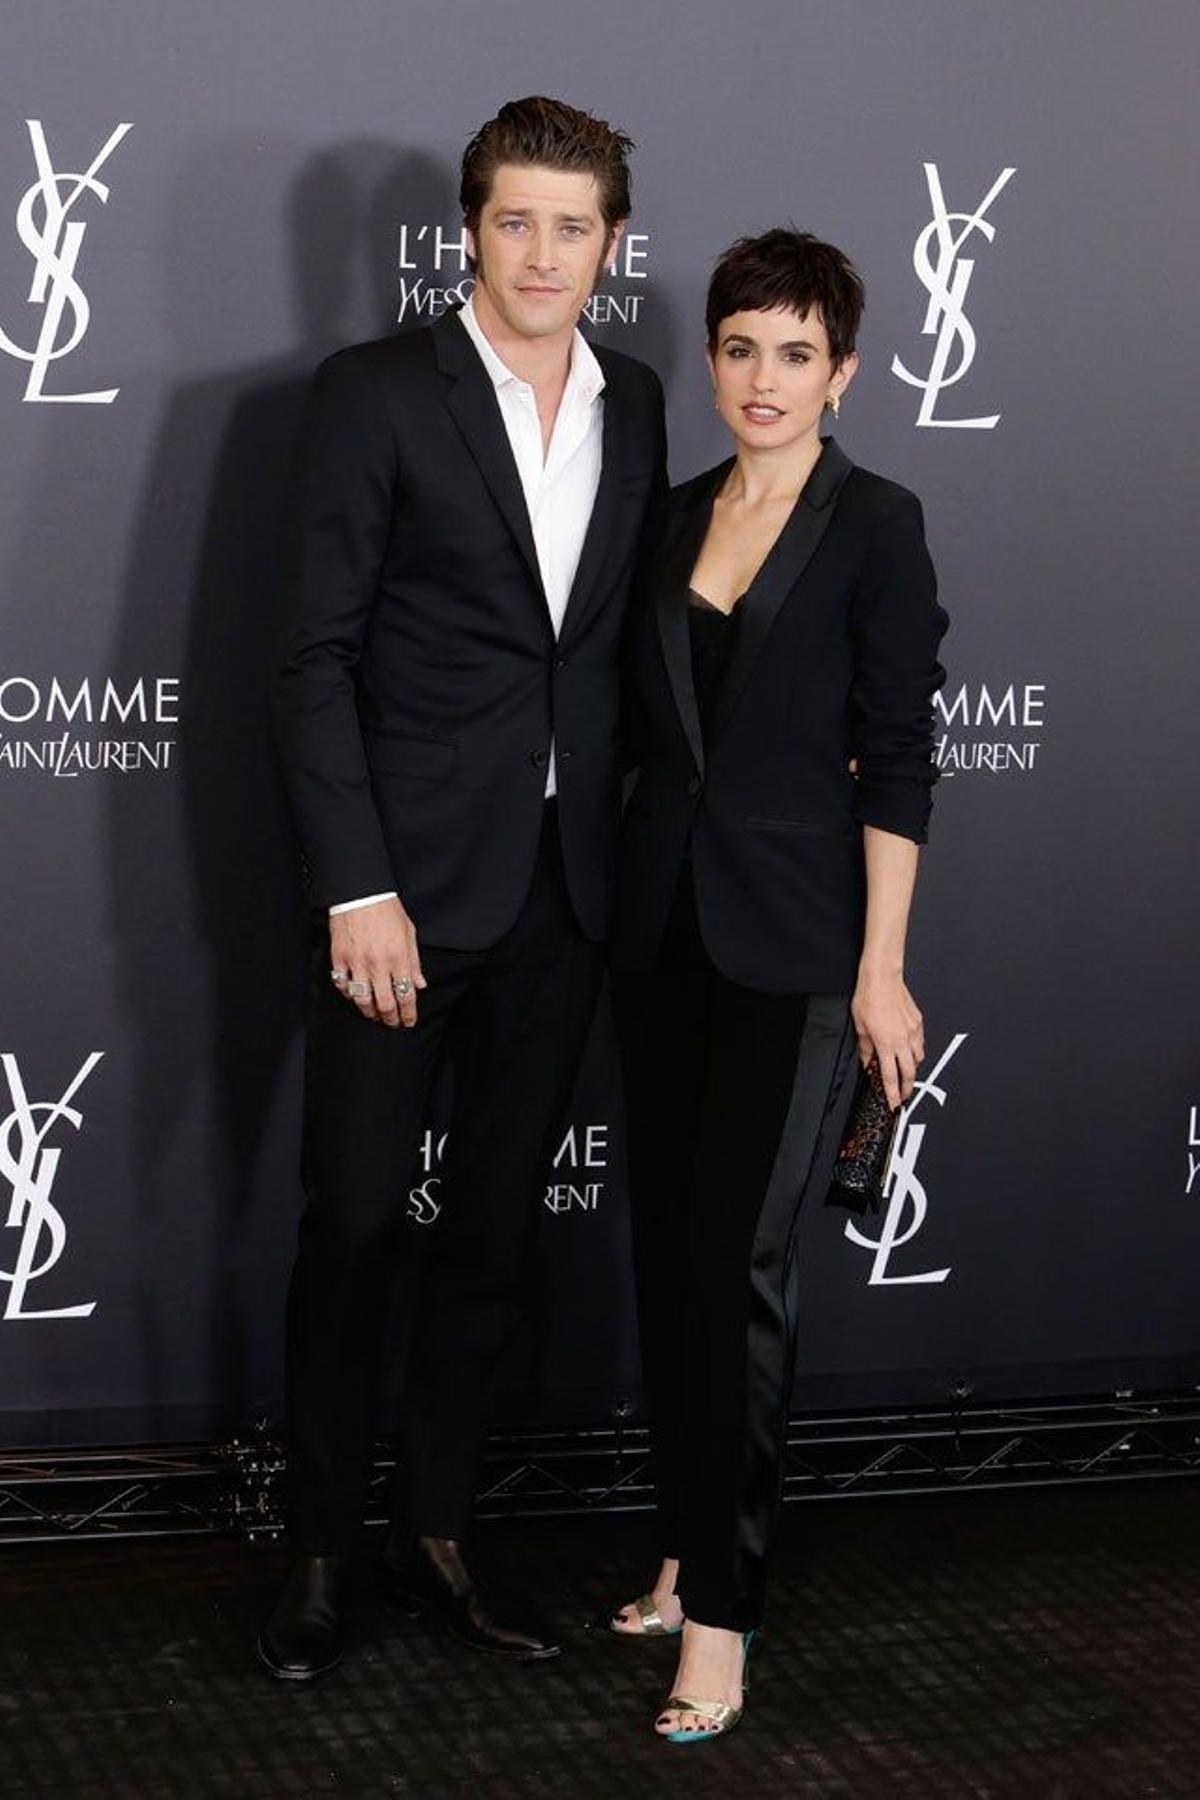 Verónica Echegui y Vinnie Woolston, en la fiesta de aniversario L'Homme de Yves Saint Laurent.